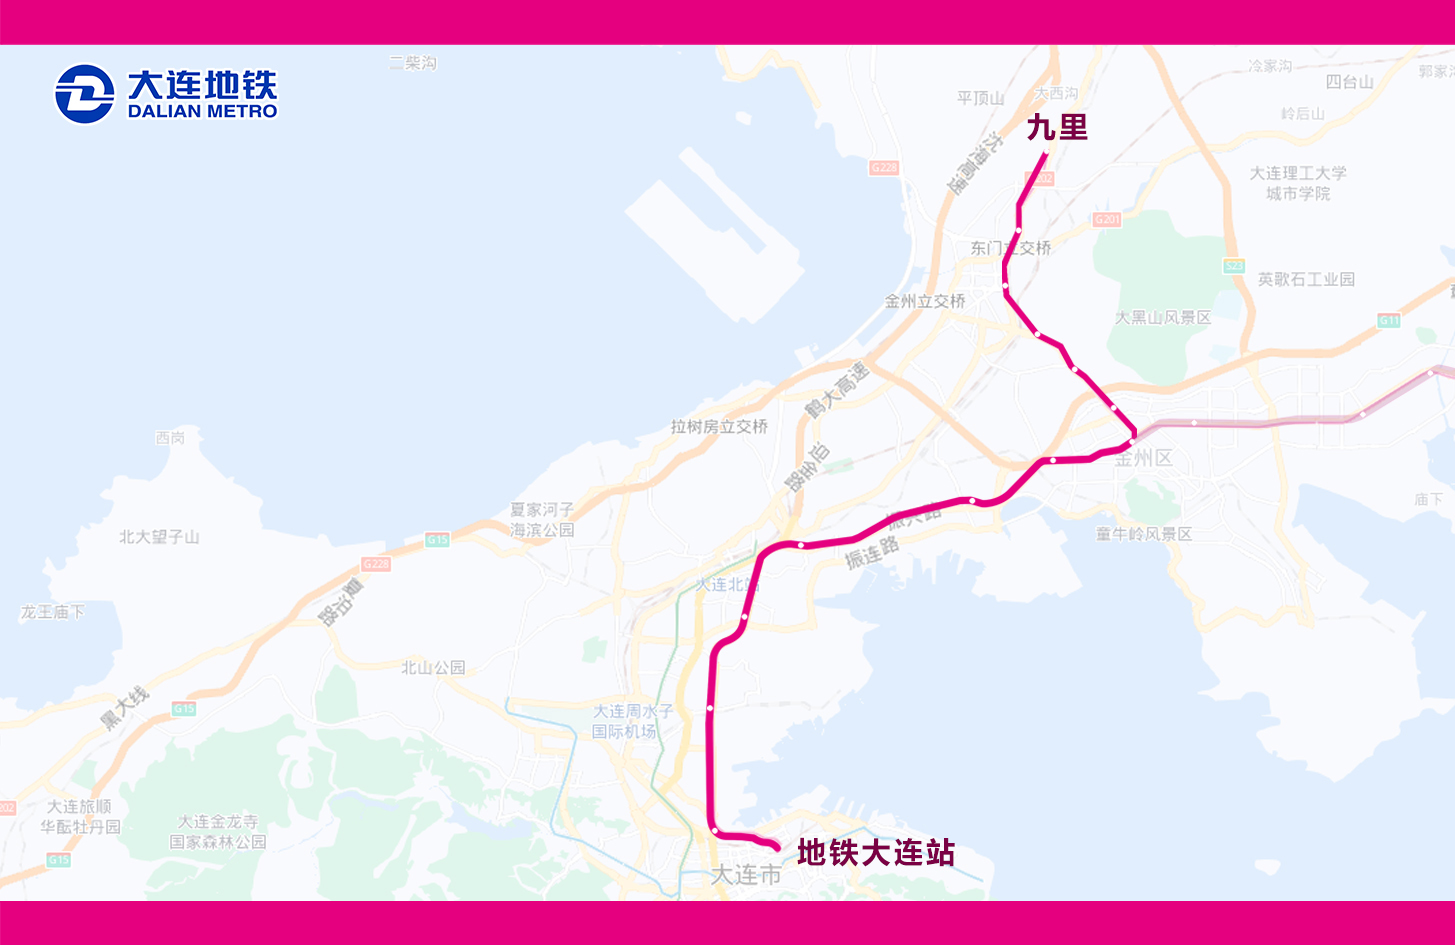 地铁3号线直达九里列车暂停运营